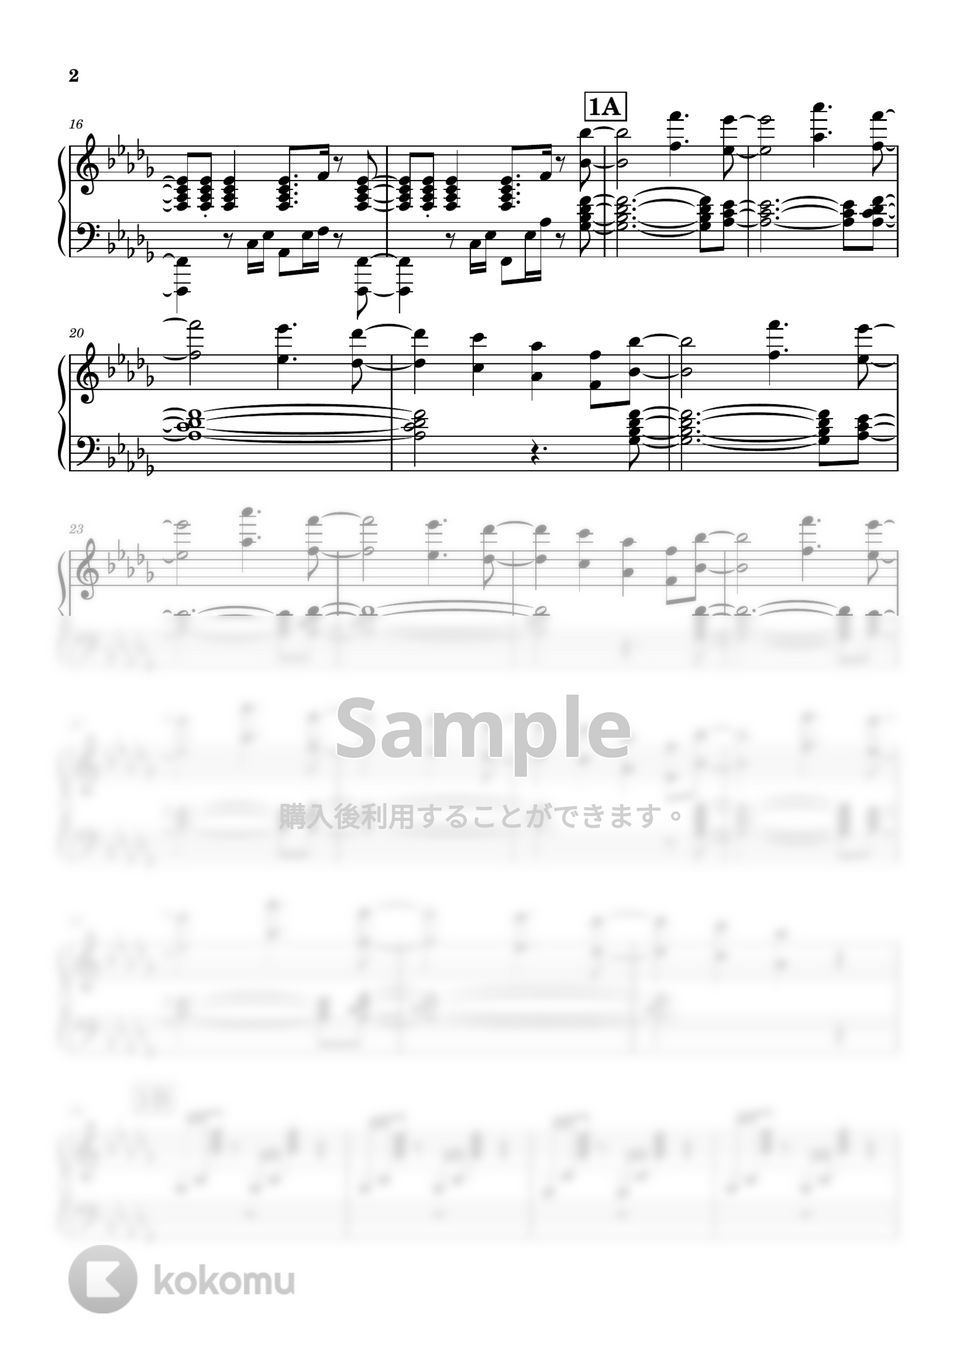 まふまふ - 携帯恋話 (ピアノ伴奏) by コトノハ